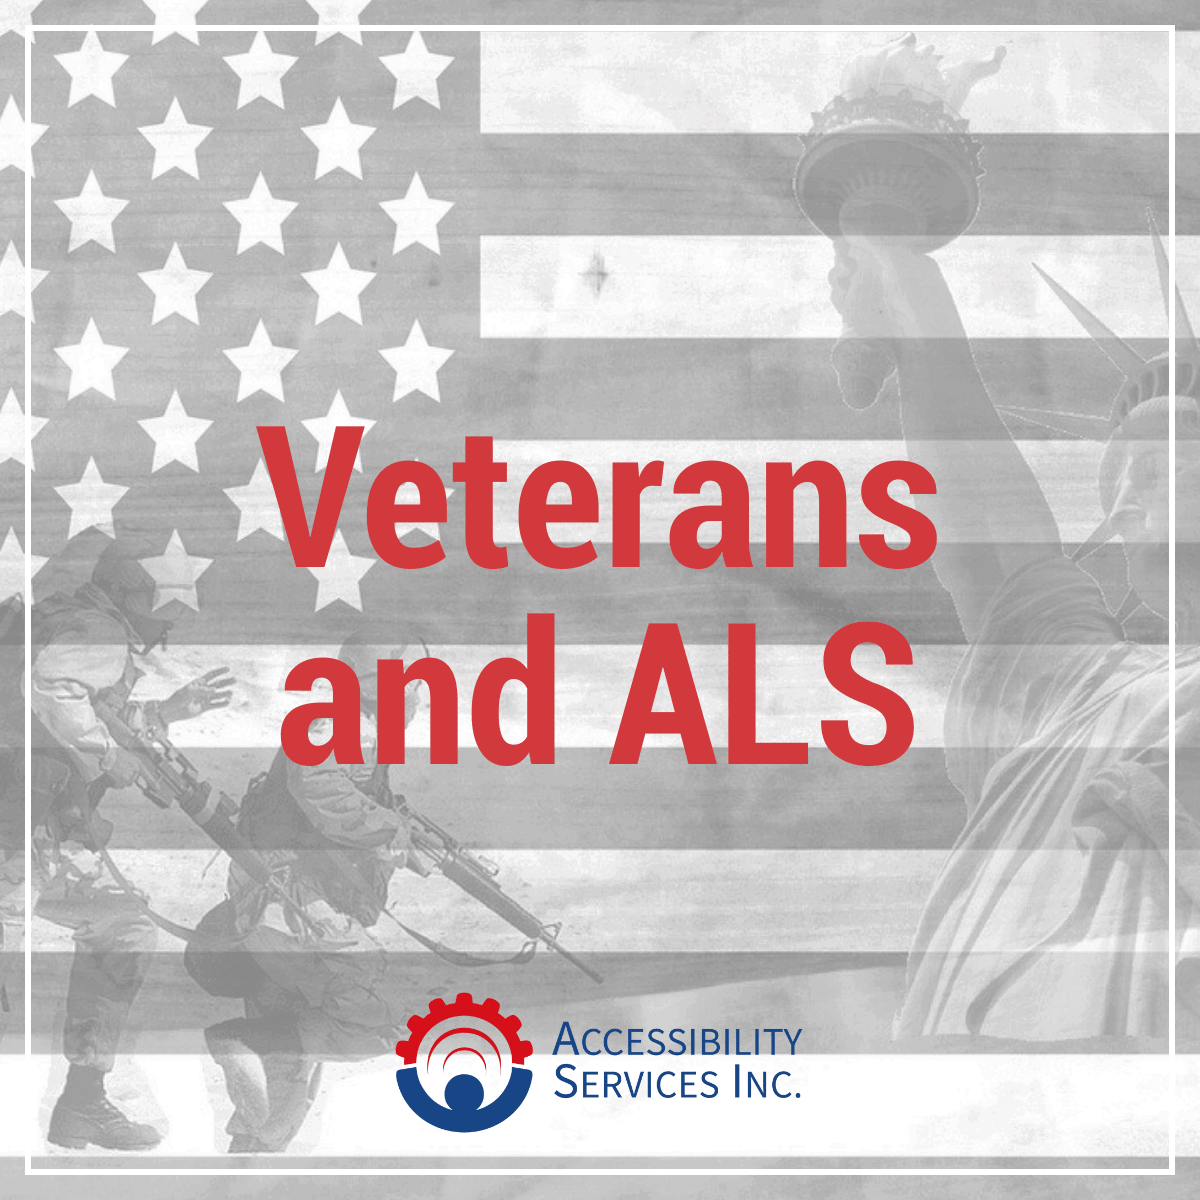 Veterans and ALS